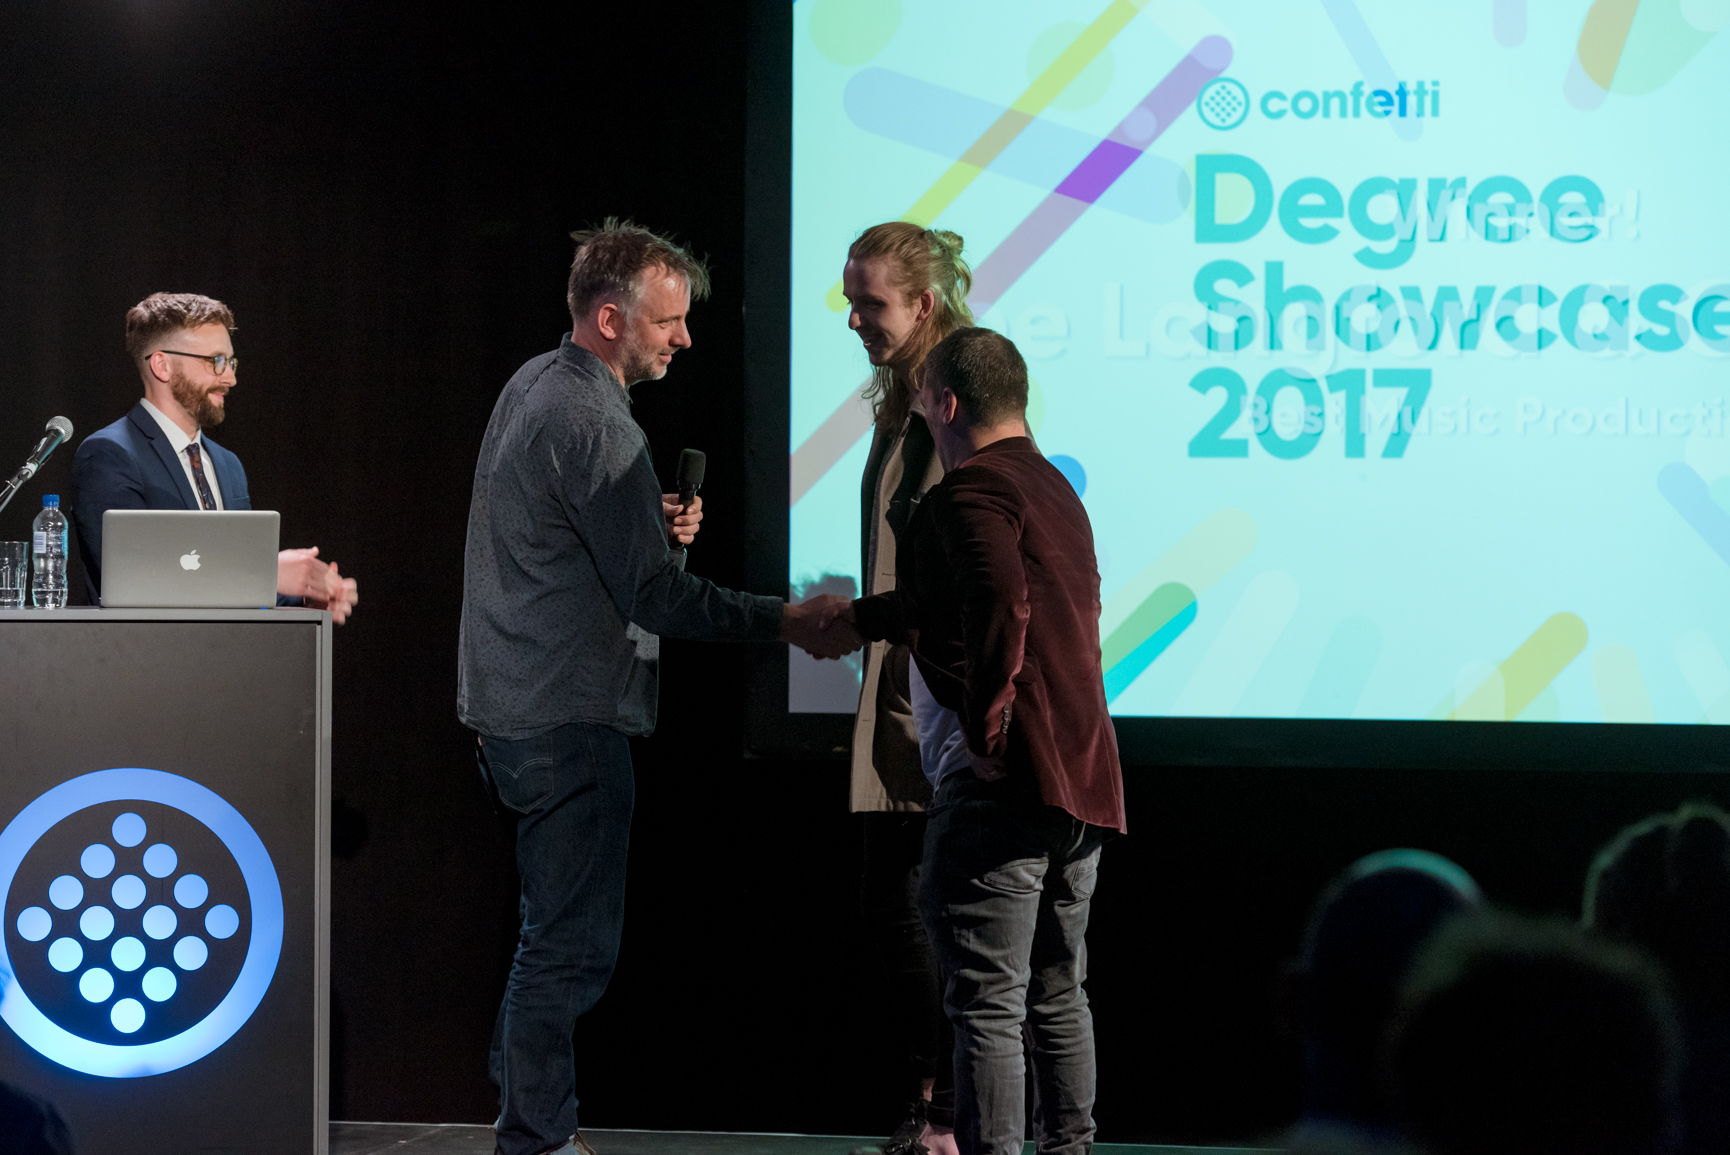 Confetti Degree Showcase Awards 2017